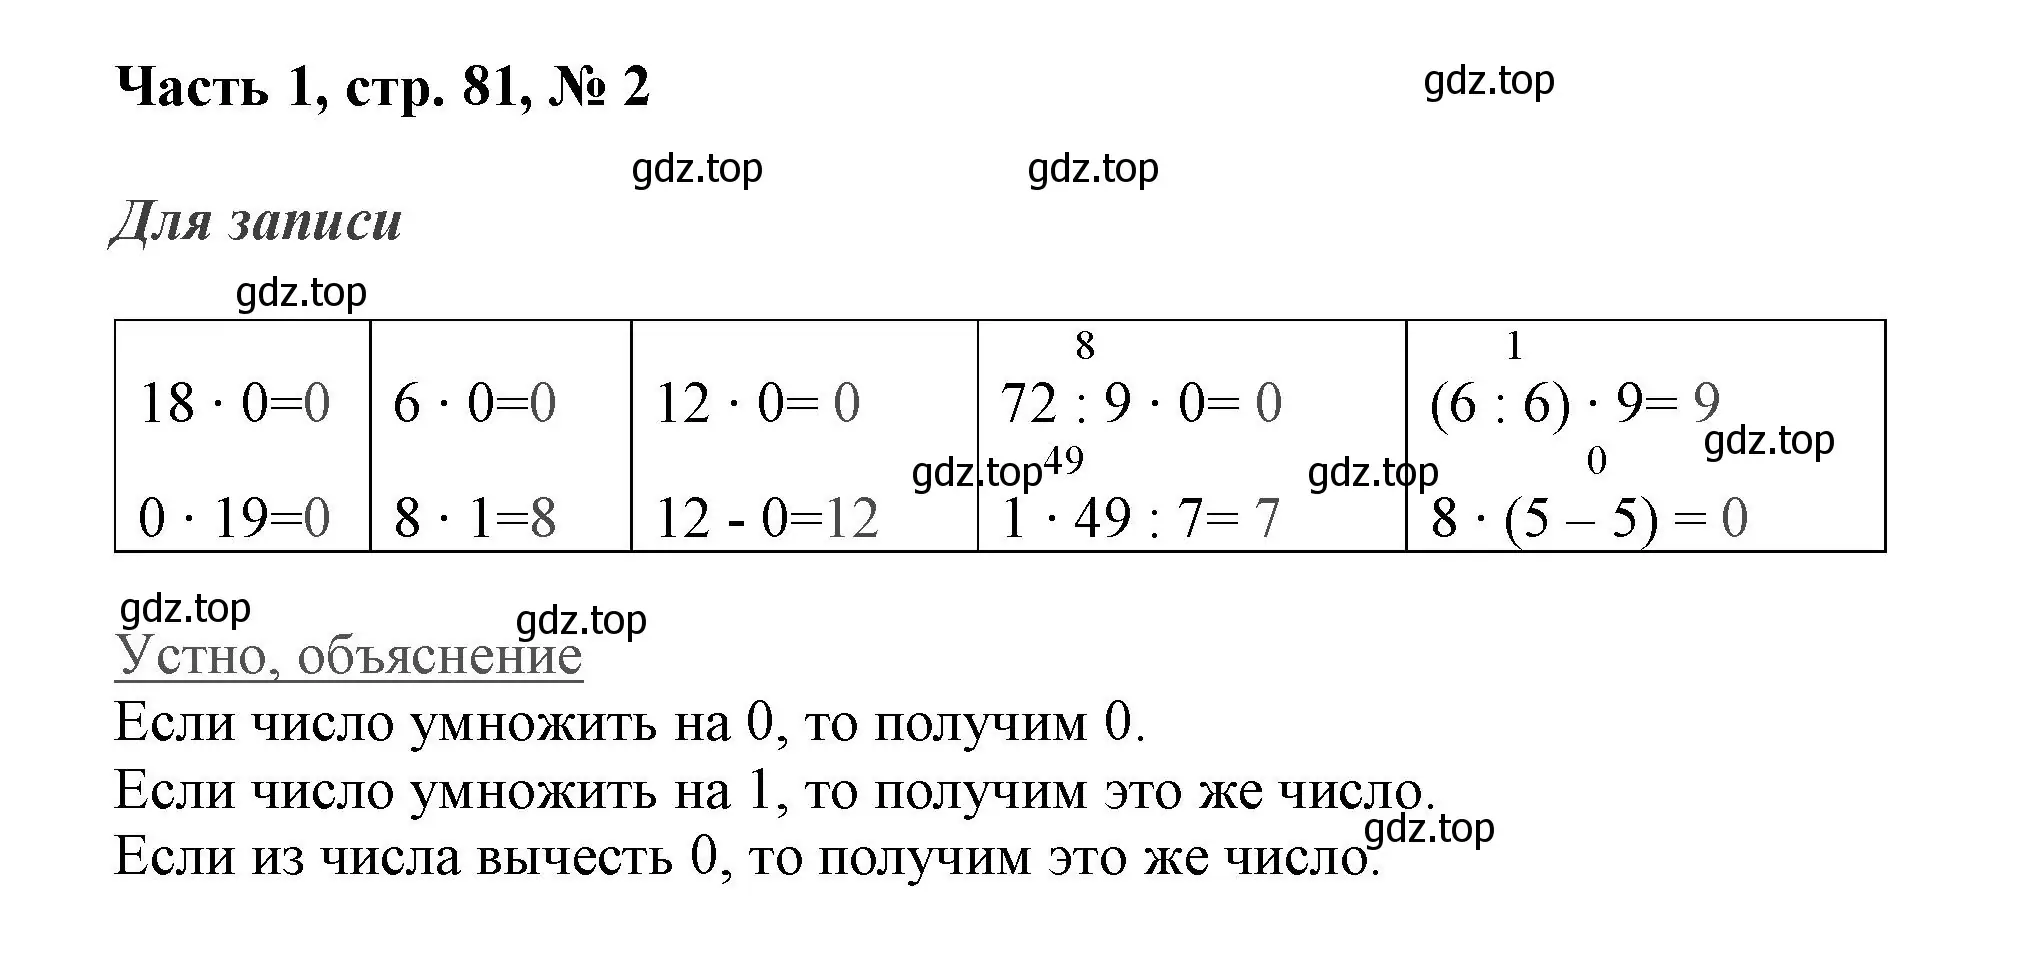 Решение номер 2 (страница 81) гдз по математике 3 класс Моро, Бантова, учебник 1 часть